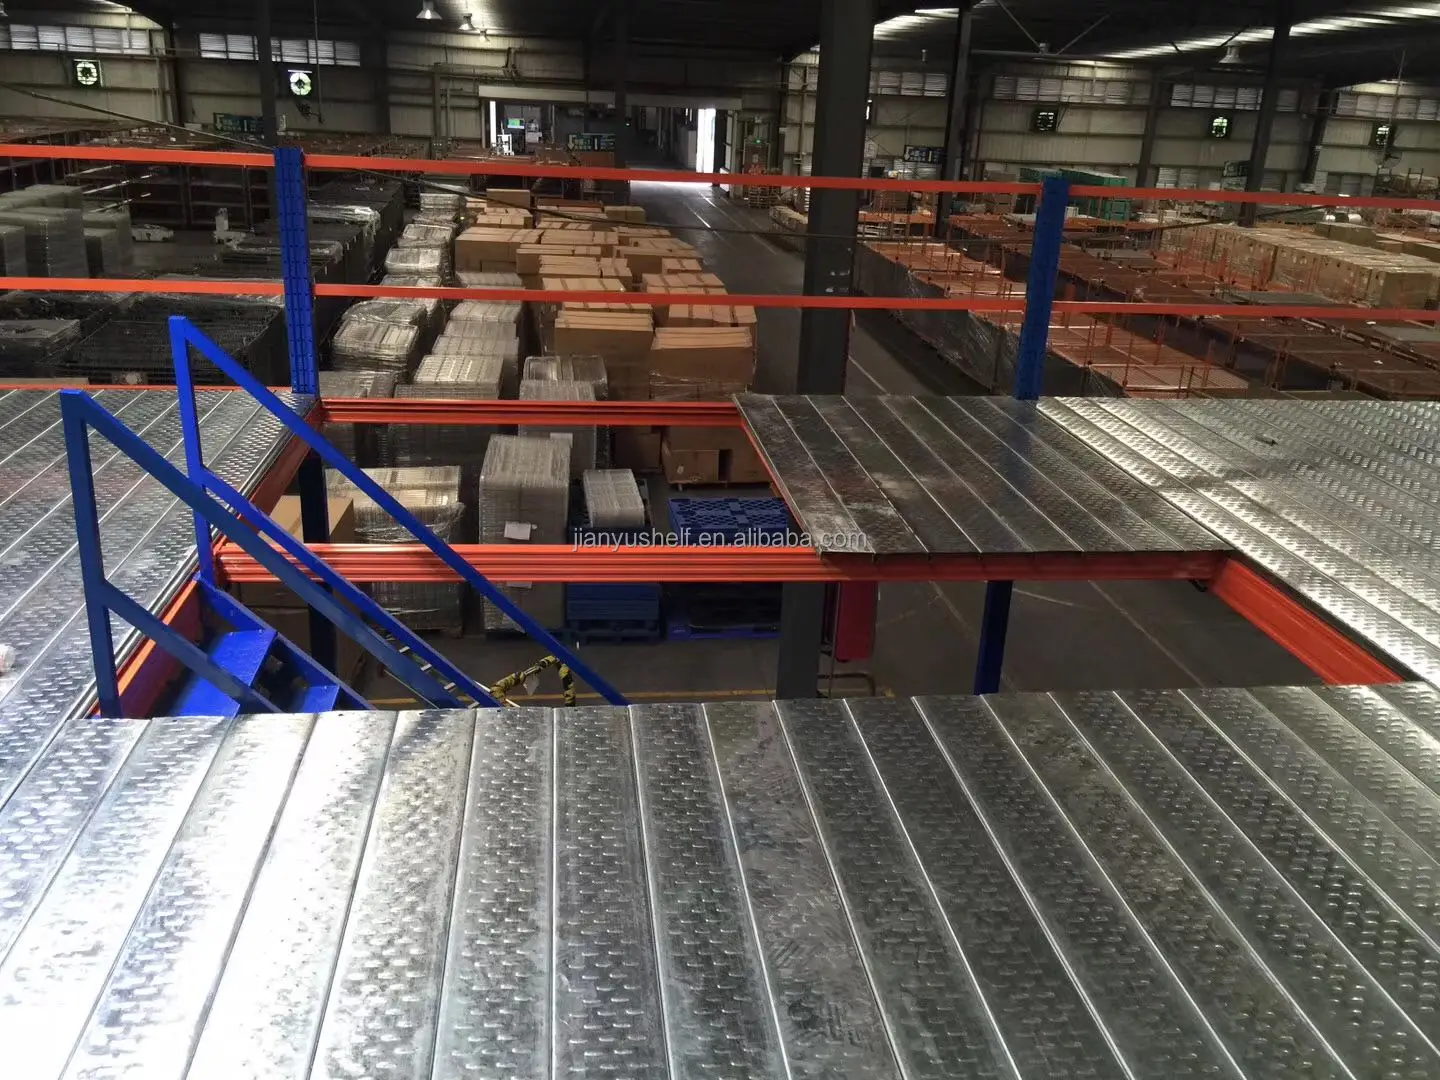 industrial storage racks warehouse Shelf heavy duty mezzanine system mezzanine floor rack for warehouse storage factory